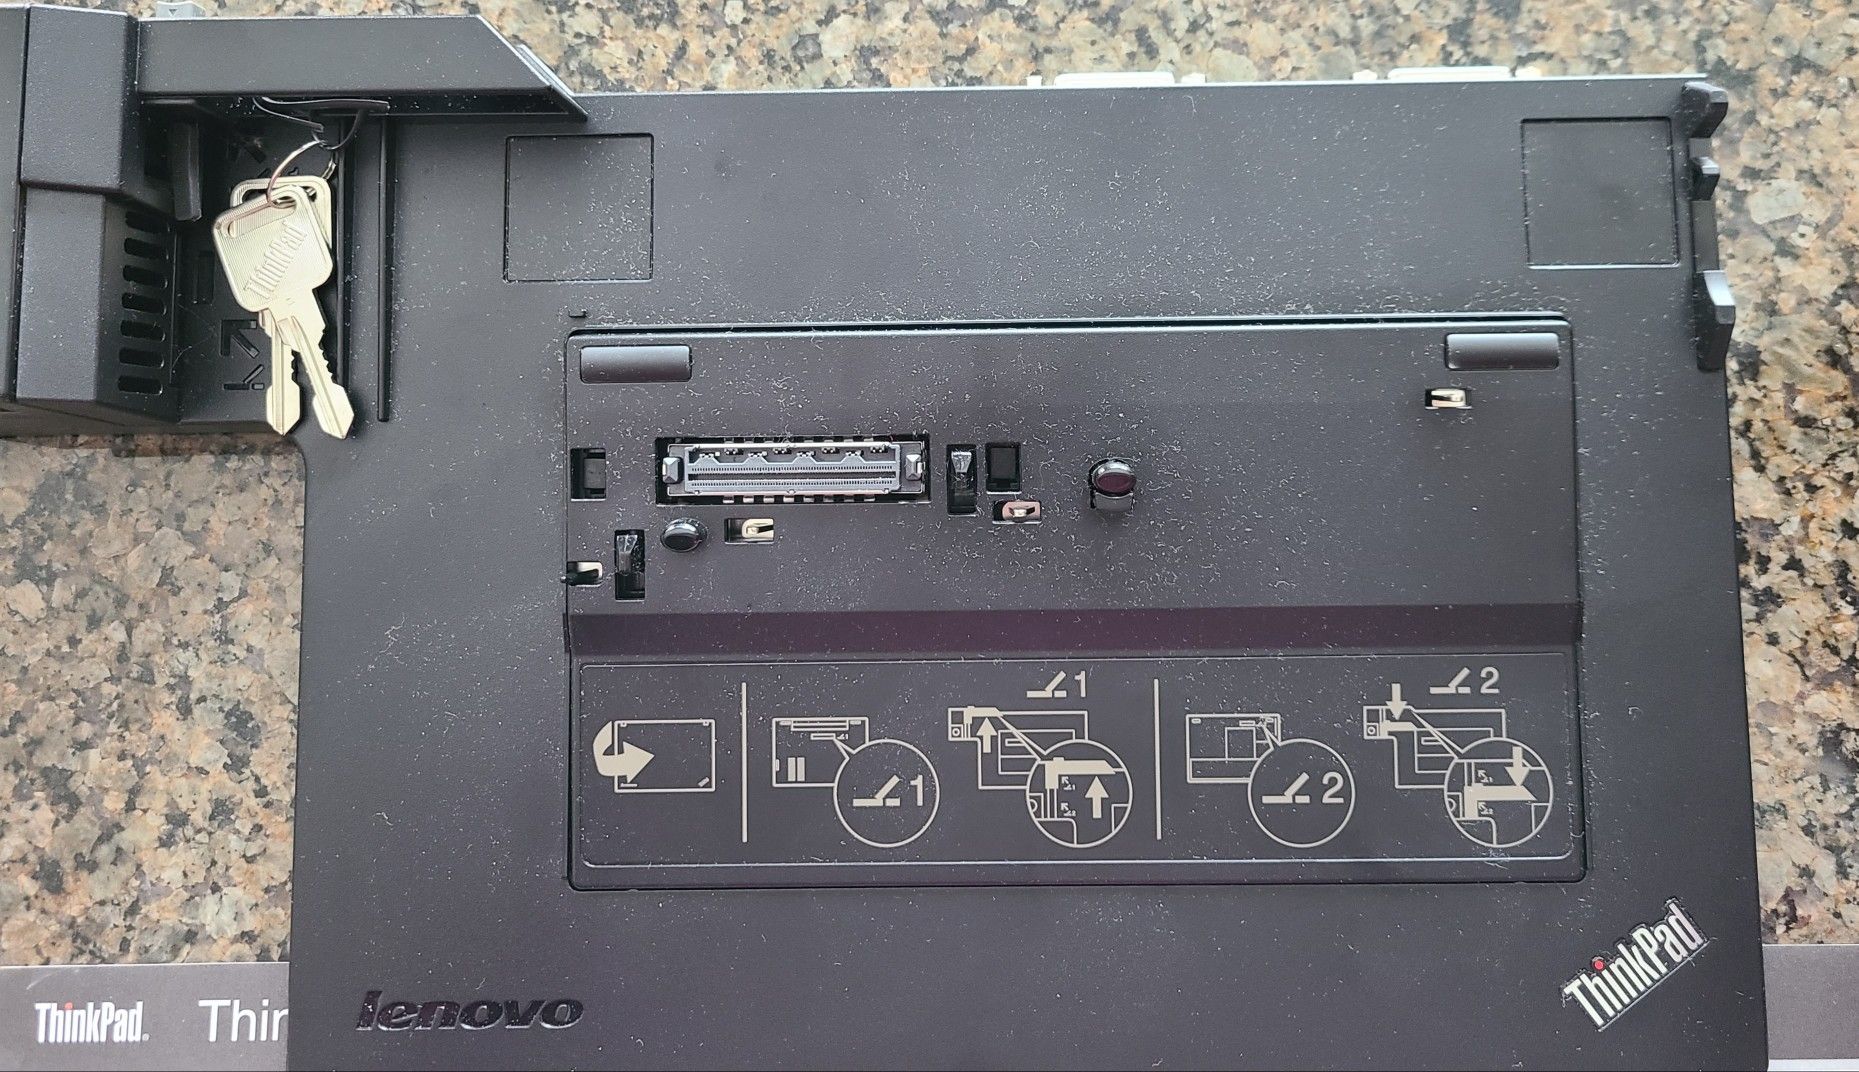 Lenovo ThinkPad mini dock station